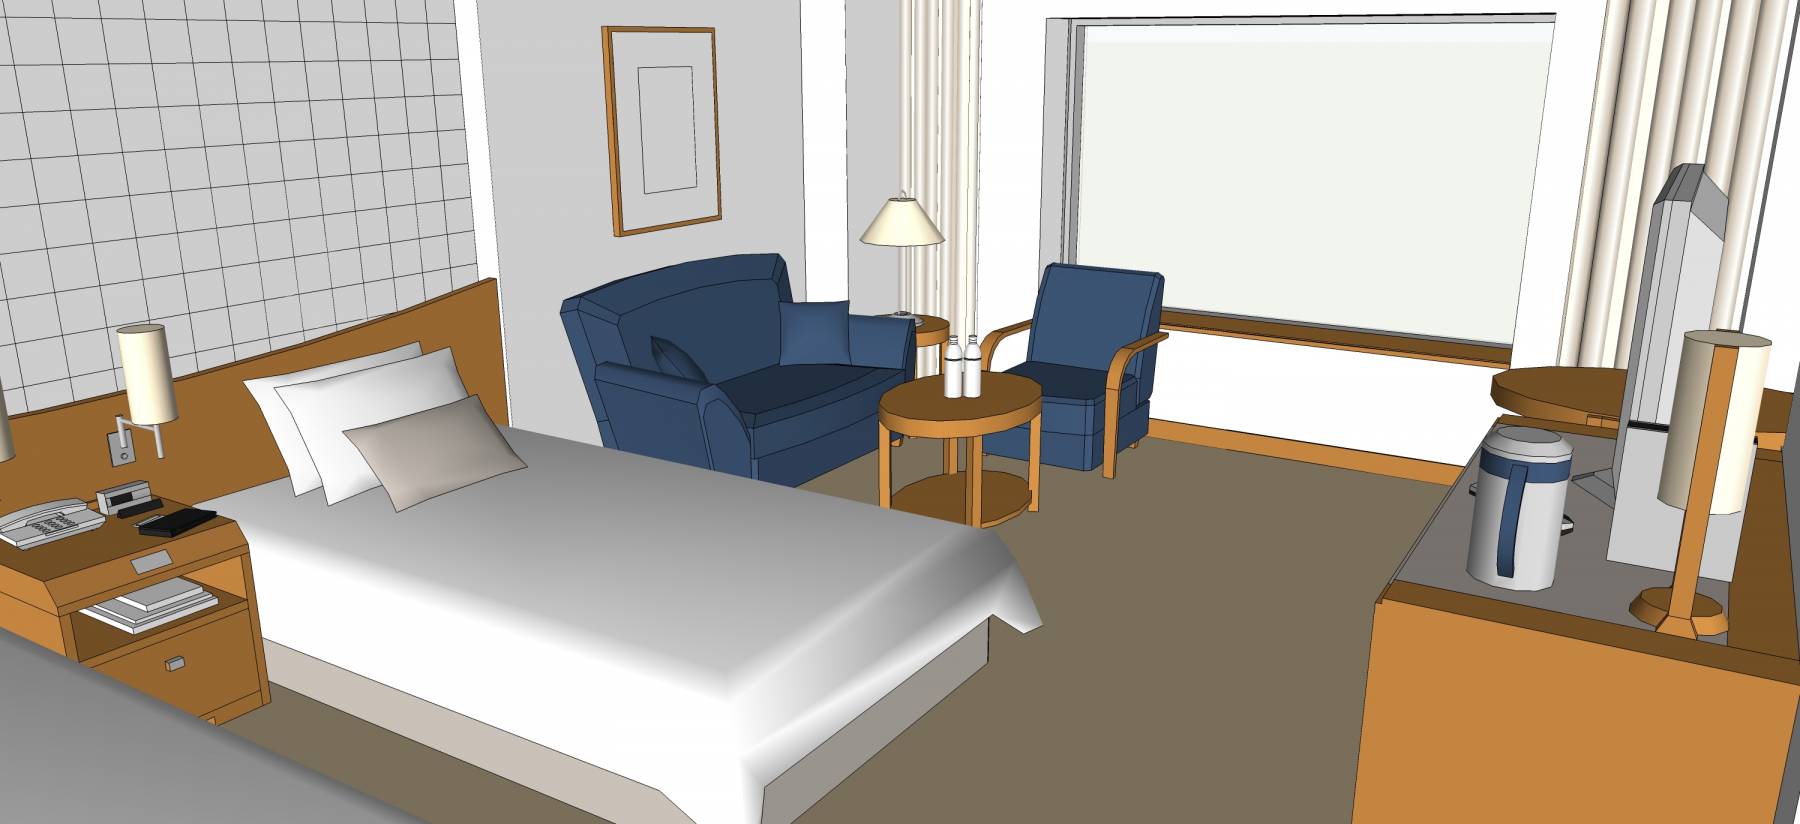 酒店客房室内模型